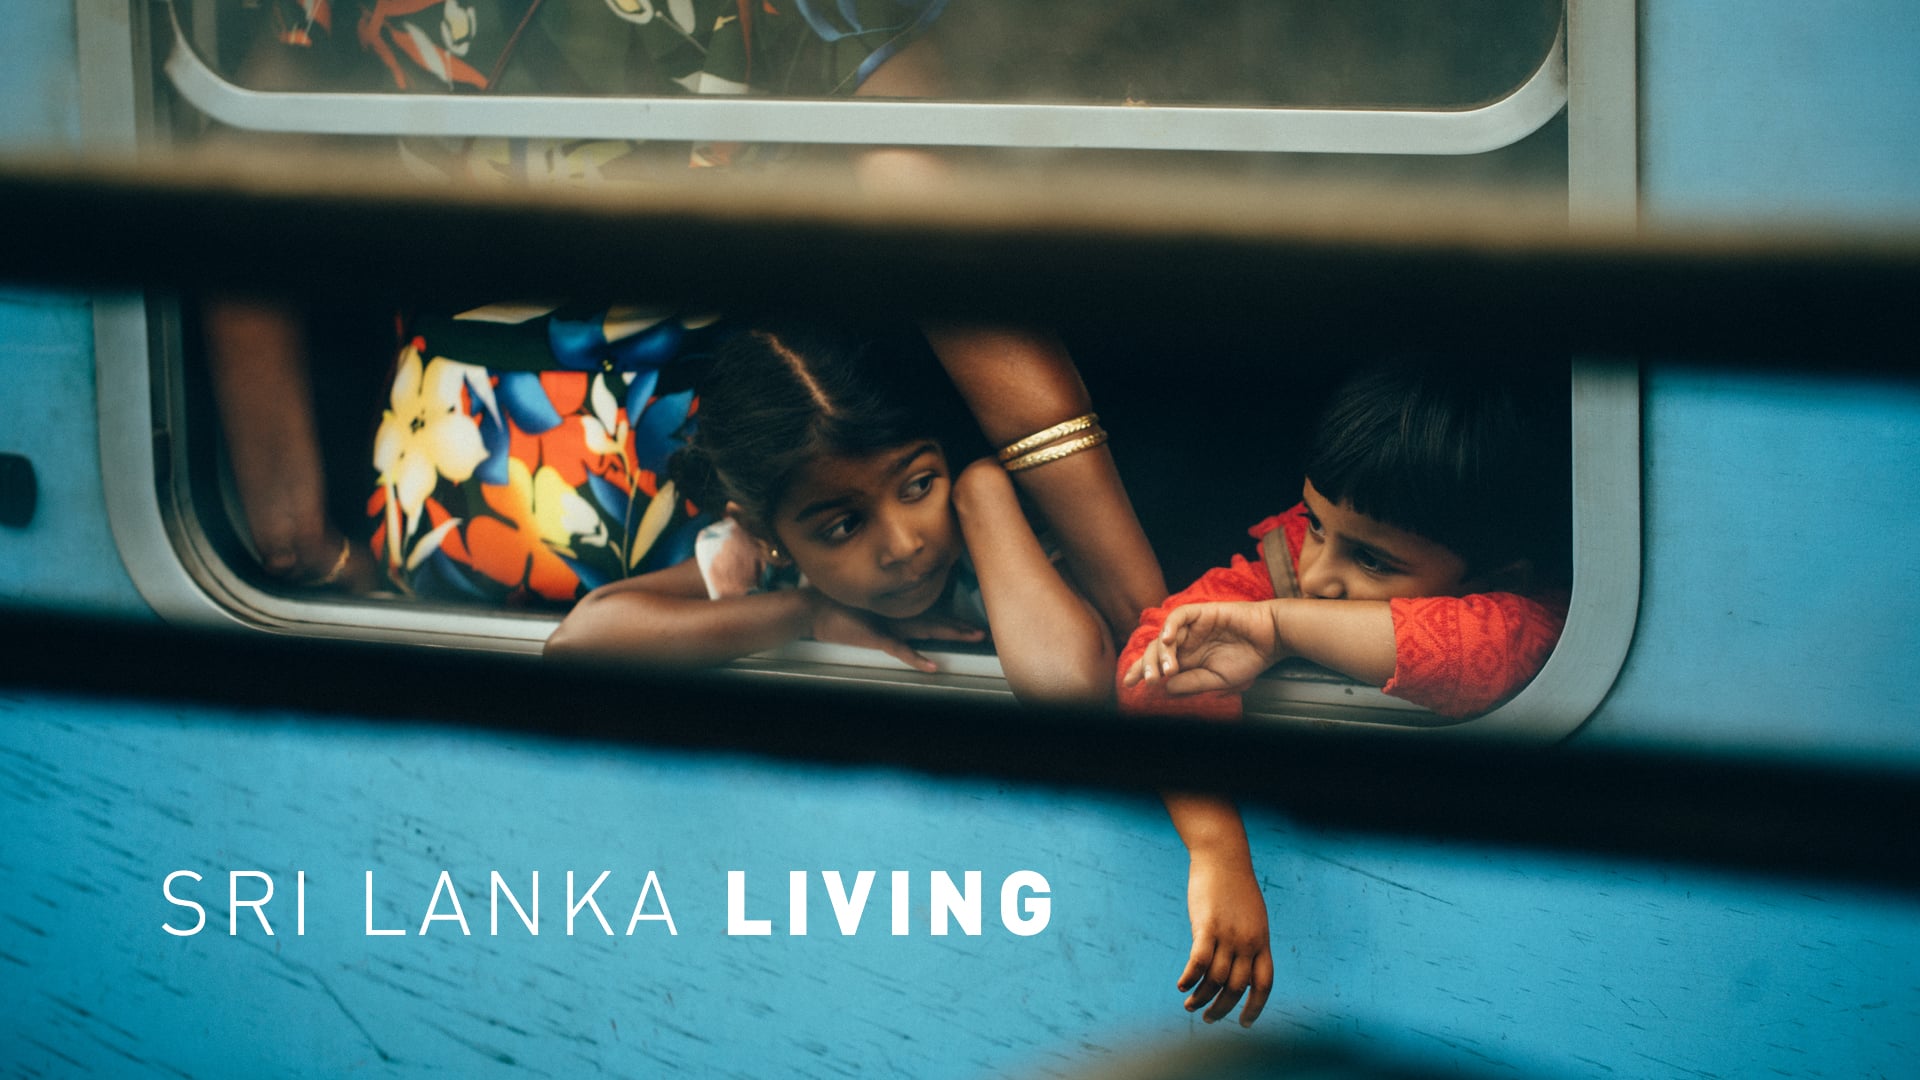 Sri Lanka Living